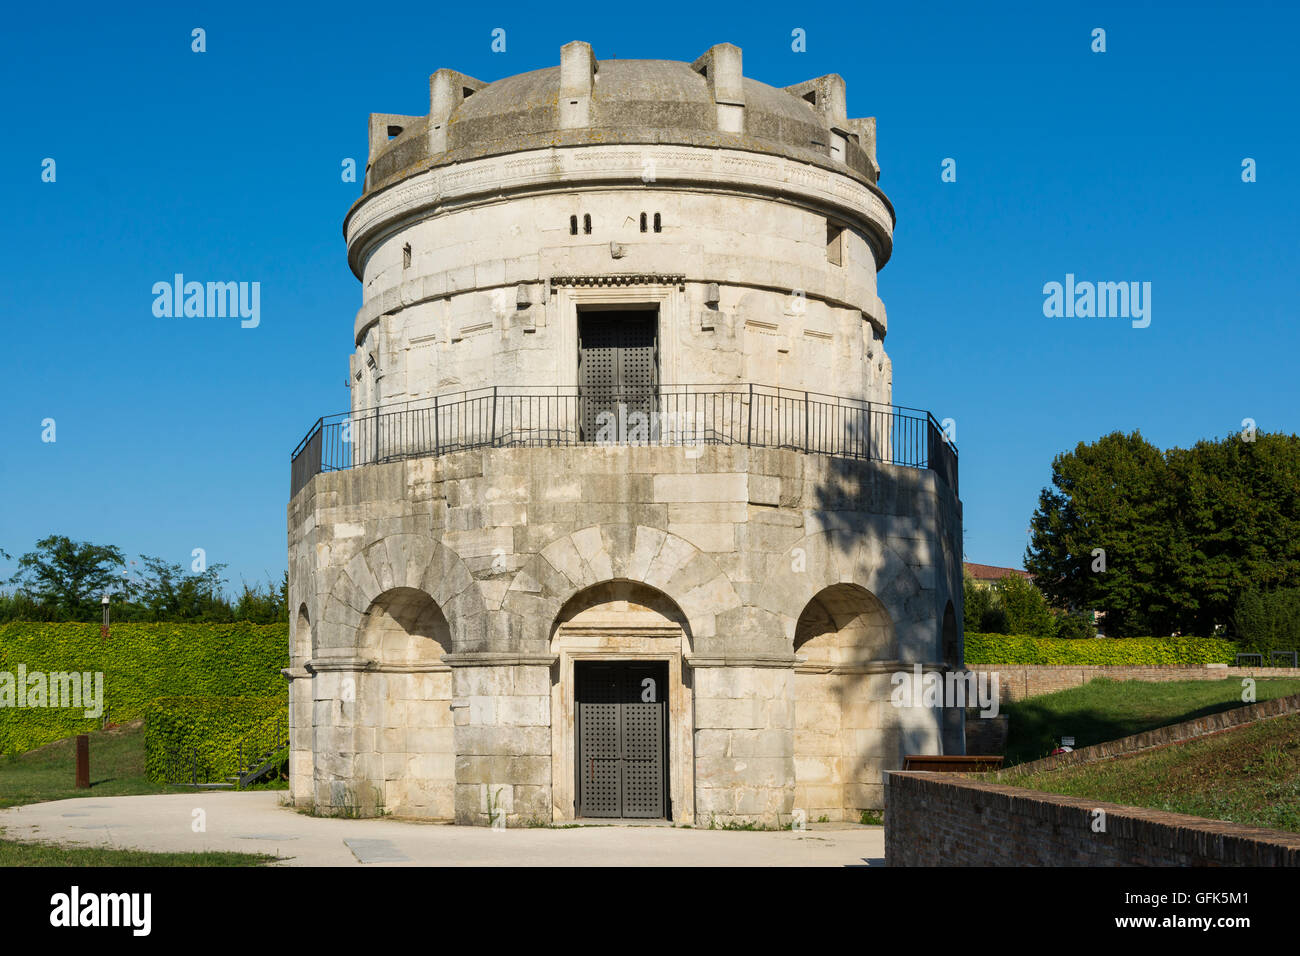 Ravenna,Italia-agosto 21,2015:Mausoleo di Teodorico in Ravenna-Italy,durante una giornata di sole. Foto Stock